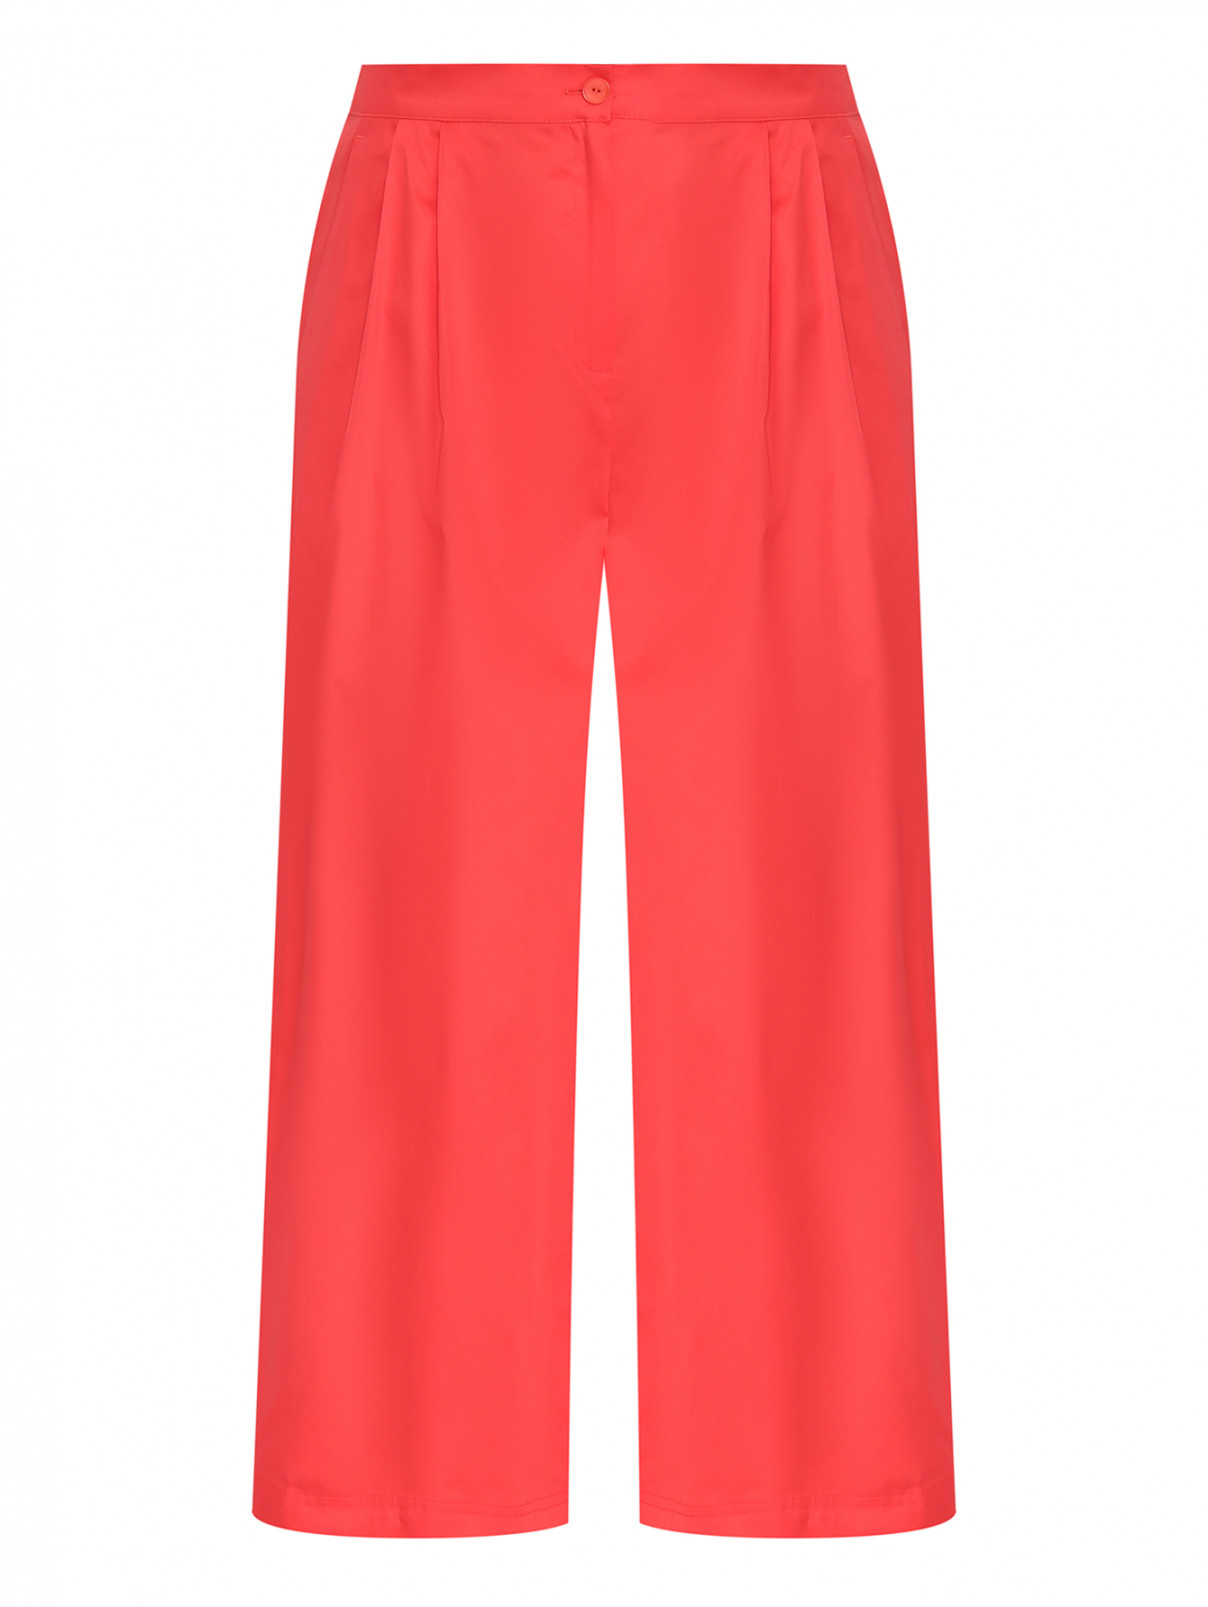 Свободные брюки из хлопка Marina Rinaldi  –  Общий вид  – Цвет:  Красный